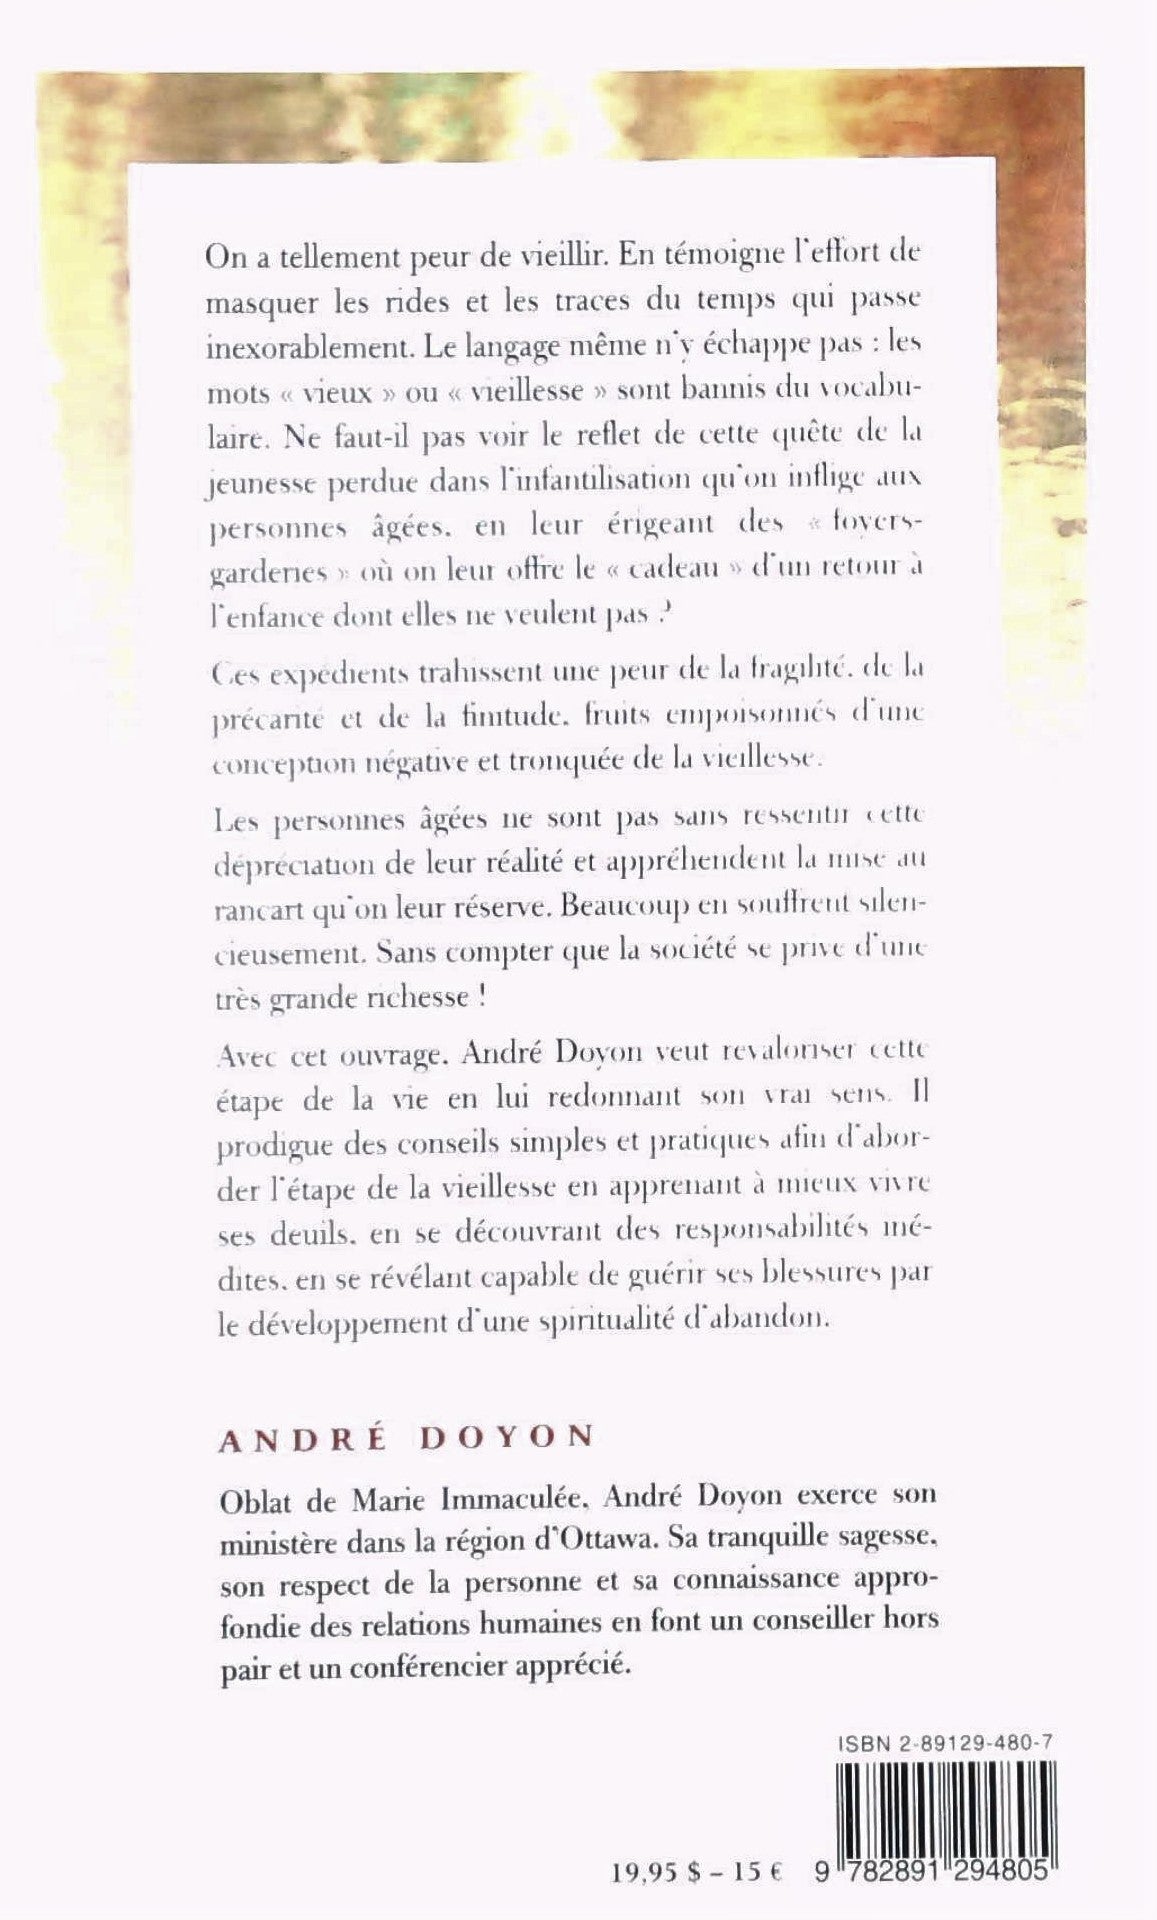 Le don de temps (André Doyon)